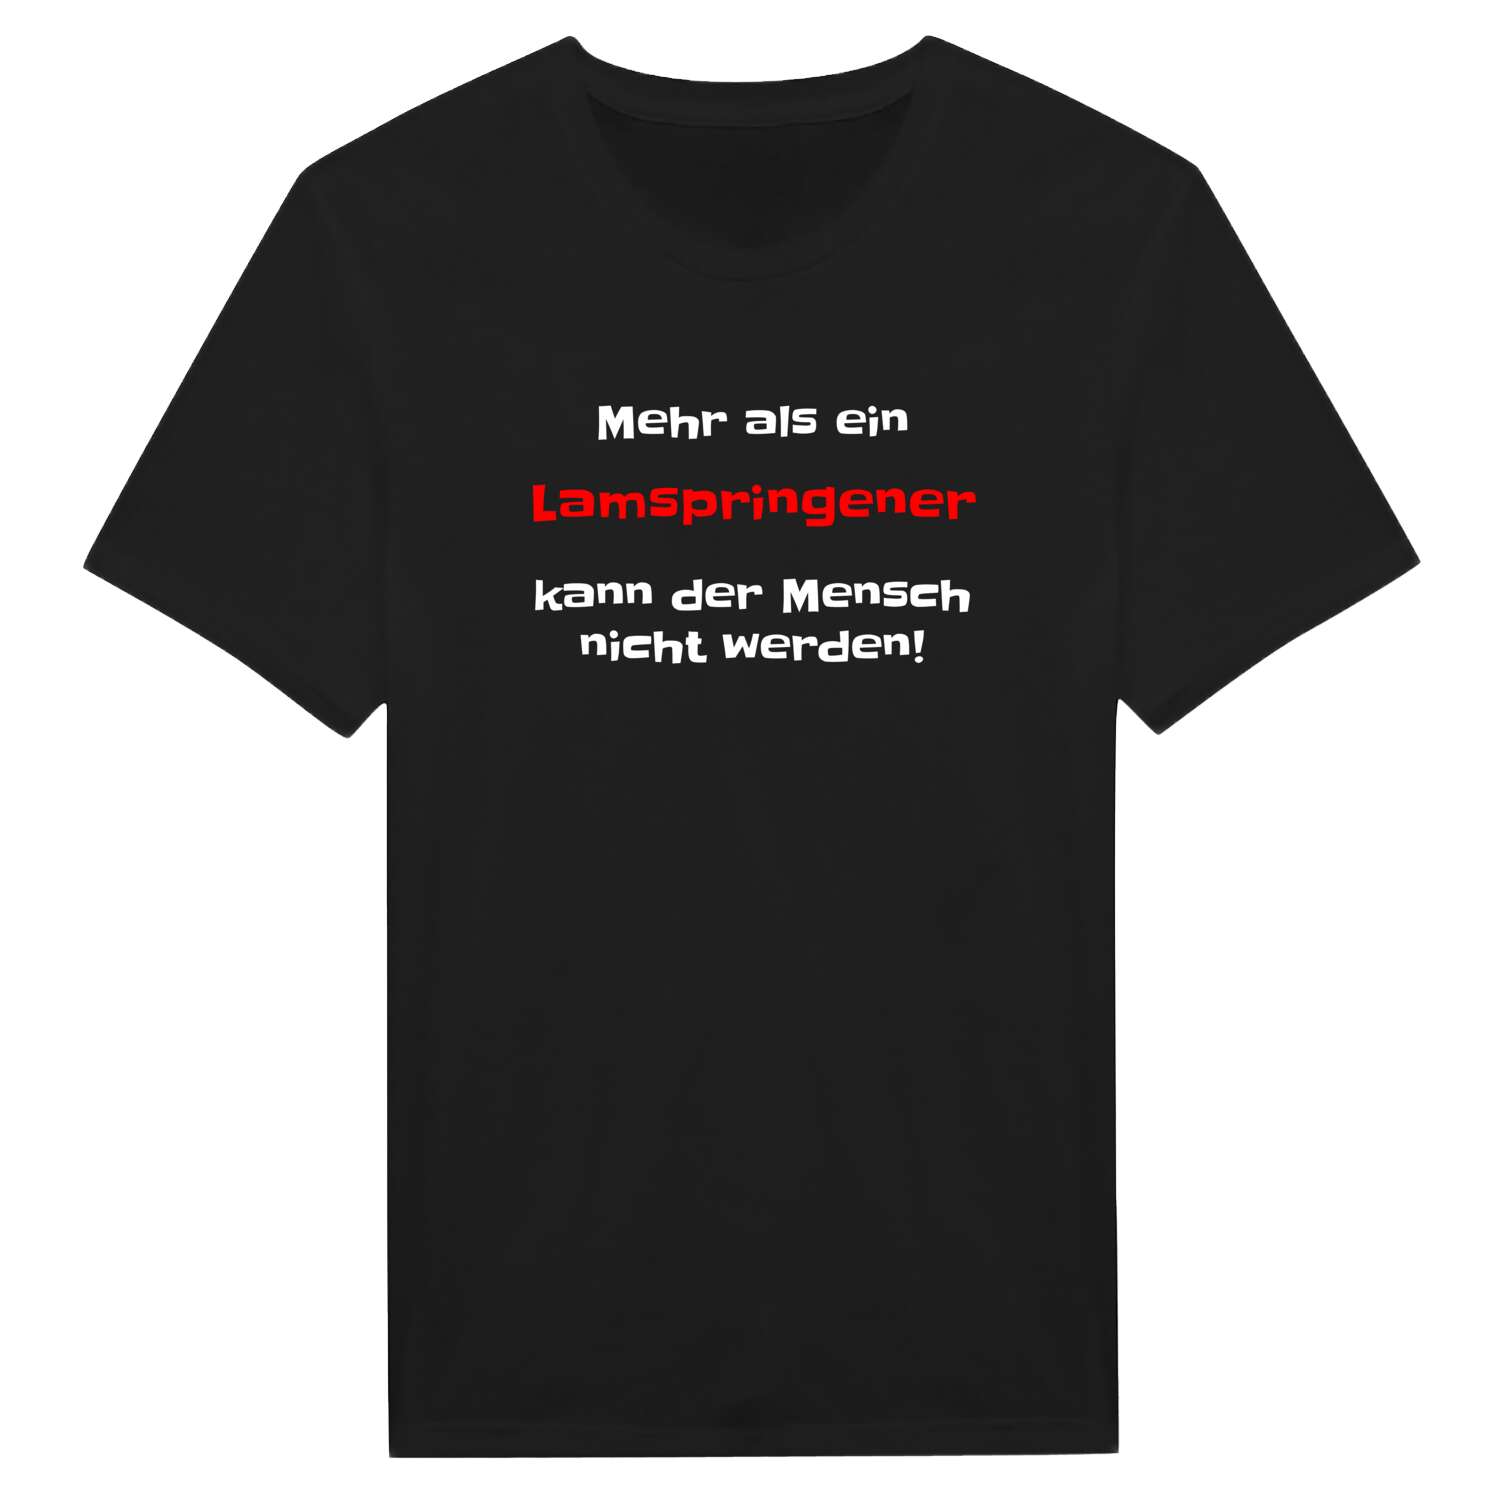 Lamspringe T-Shirt »Mehr als ein«